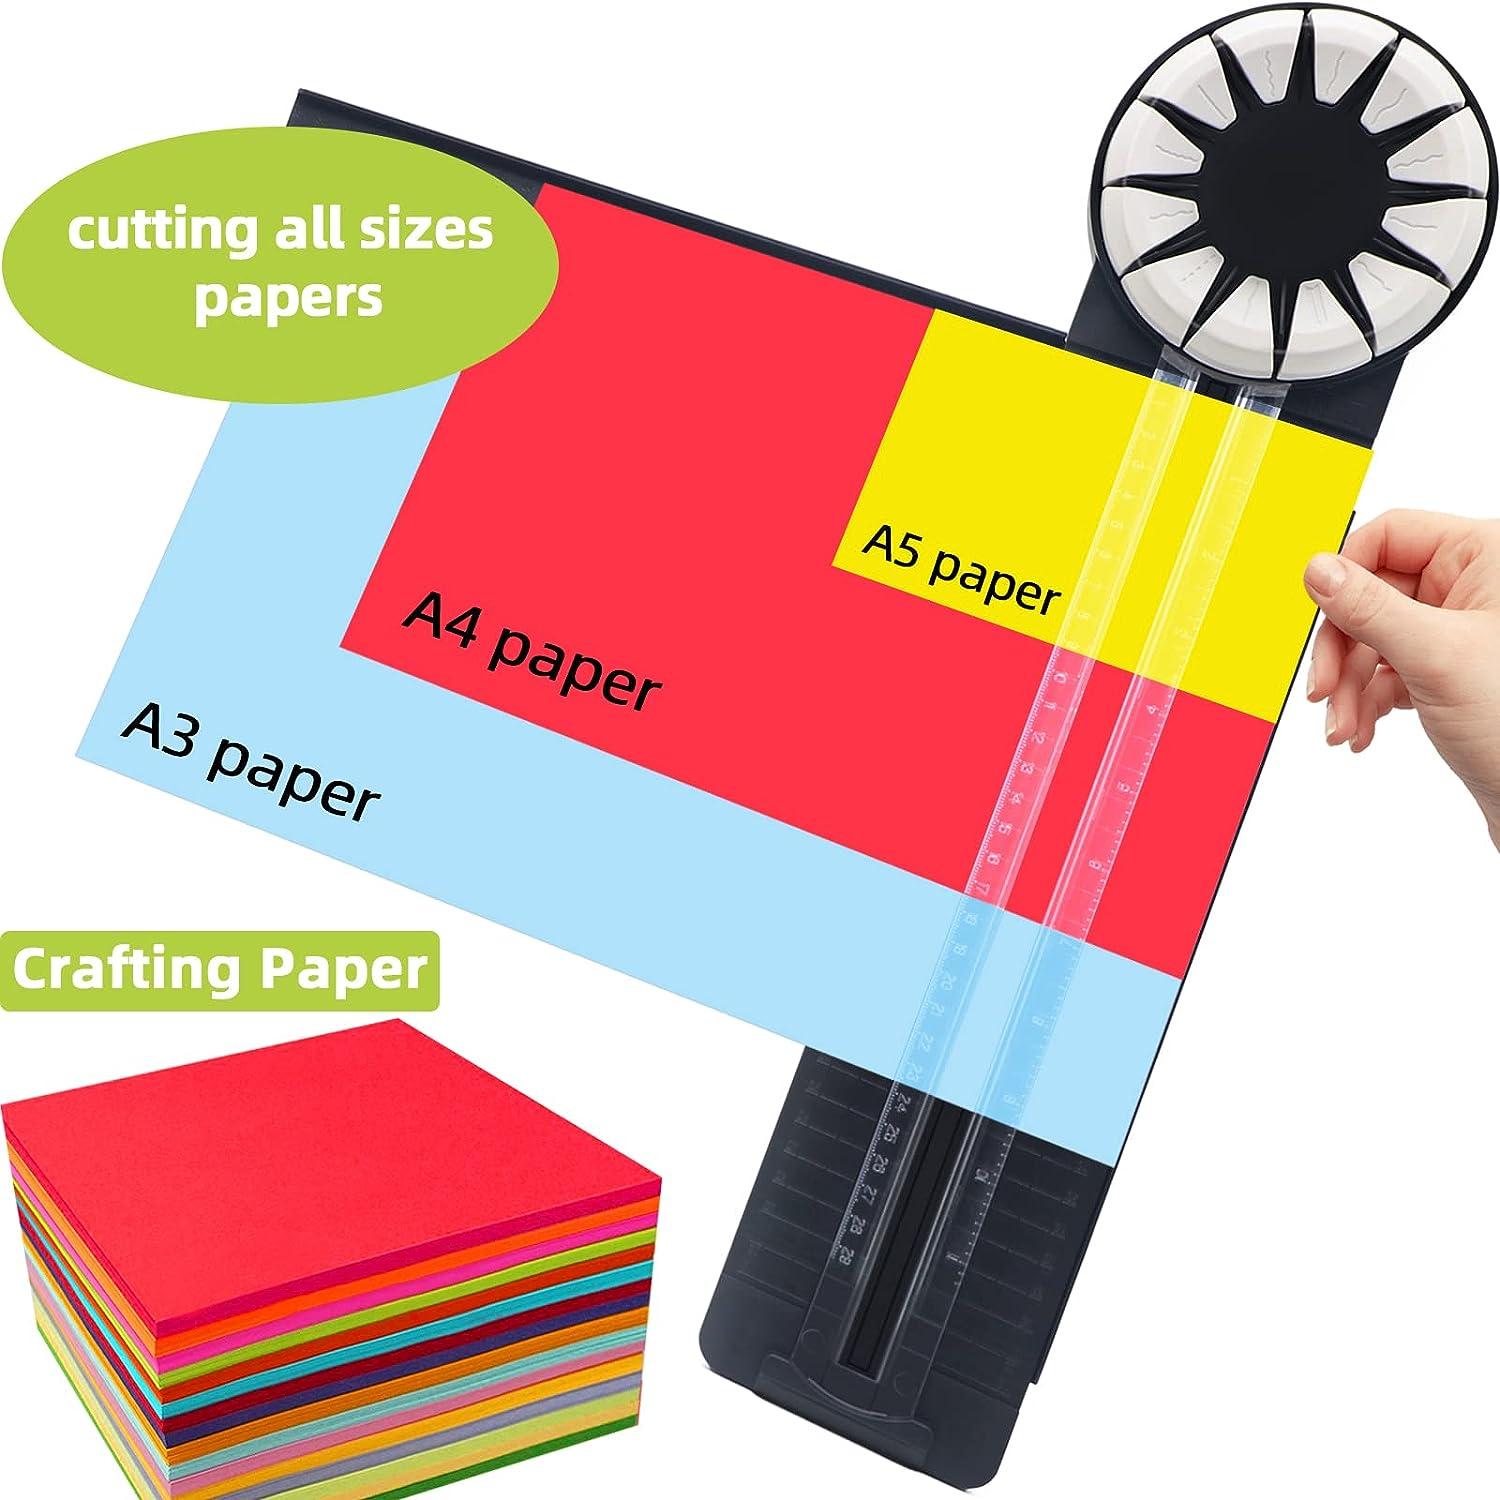 A5 Paper Cutter A5 Paper Cutter Small Mini Portable Student Paper Cutter  Folding Photo Cutter A5 Paper Cutter school supplies